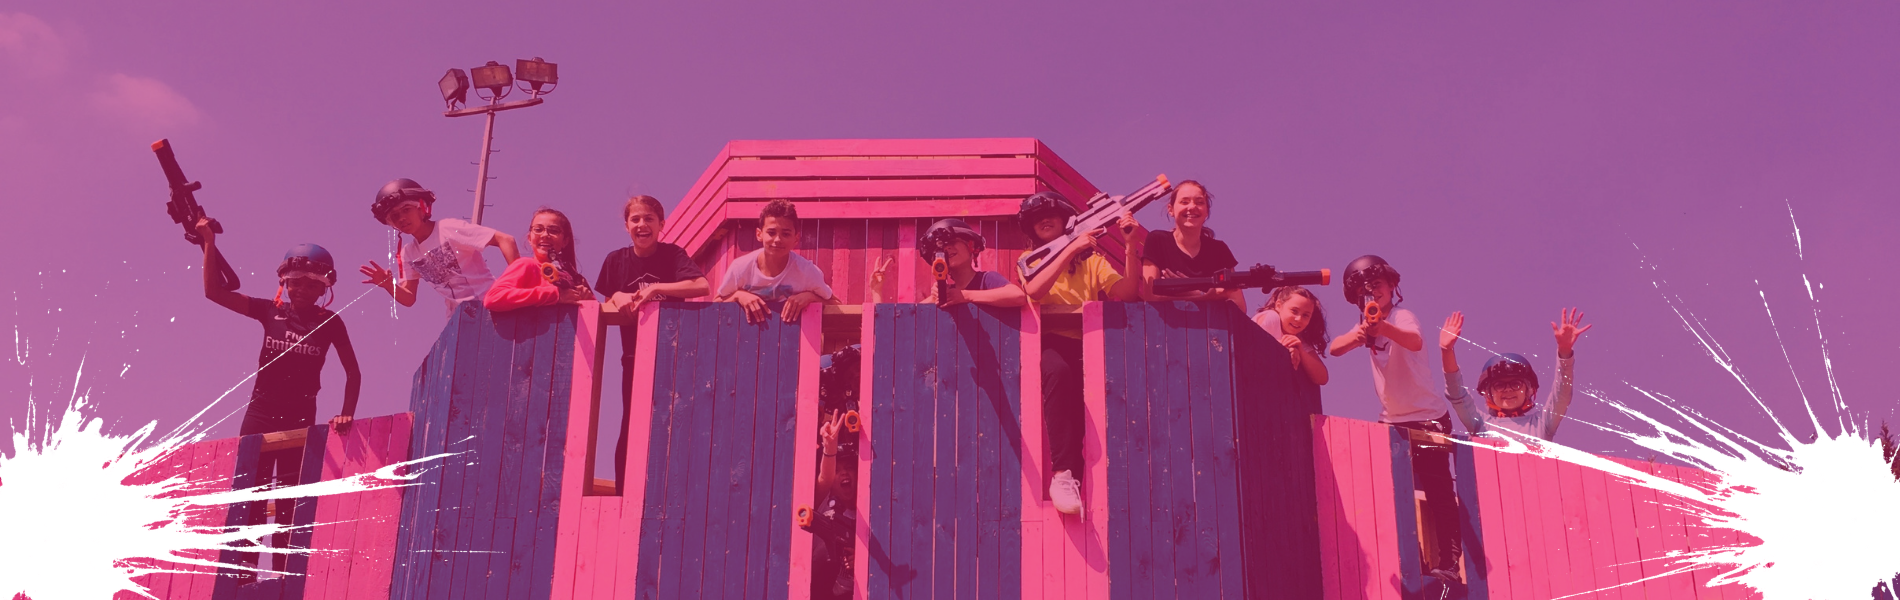 enfants sur une structure paintball rose et bleue en bois